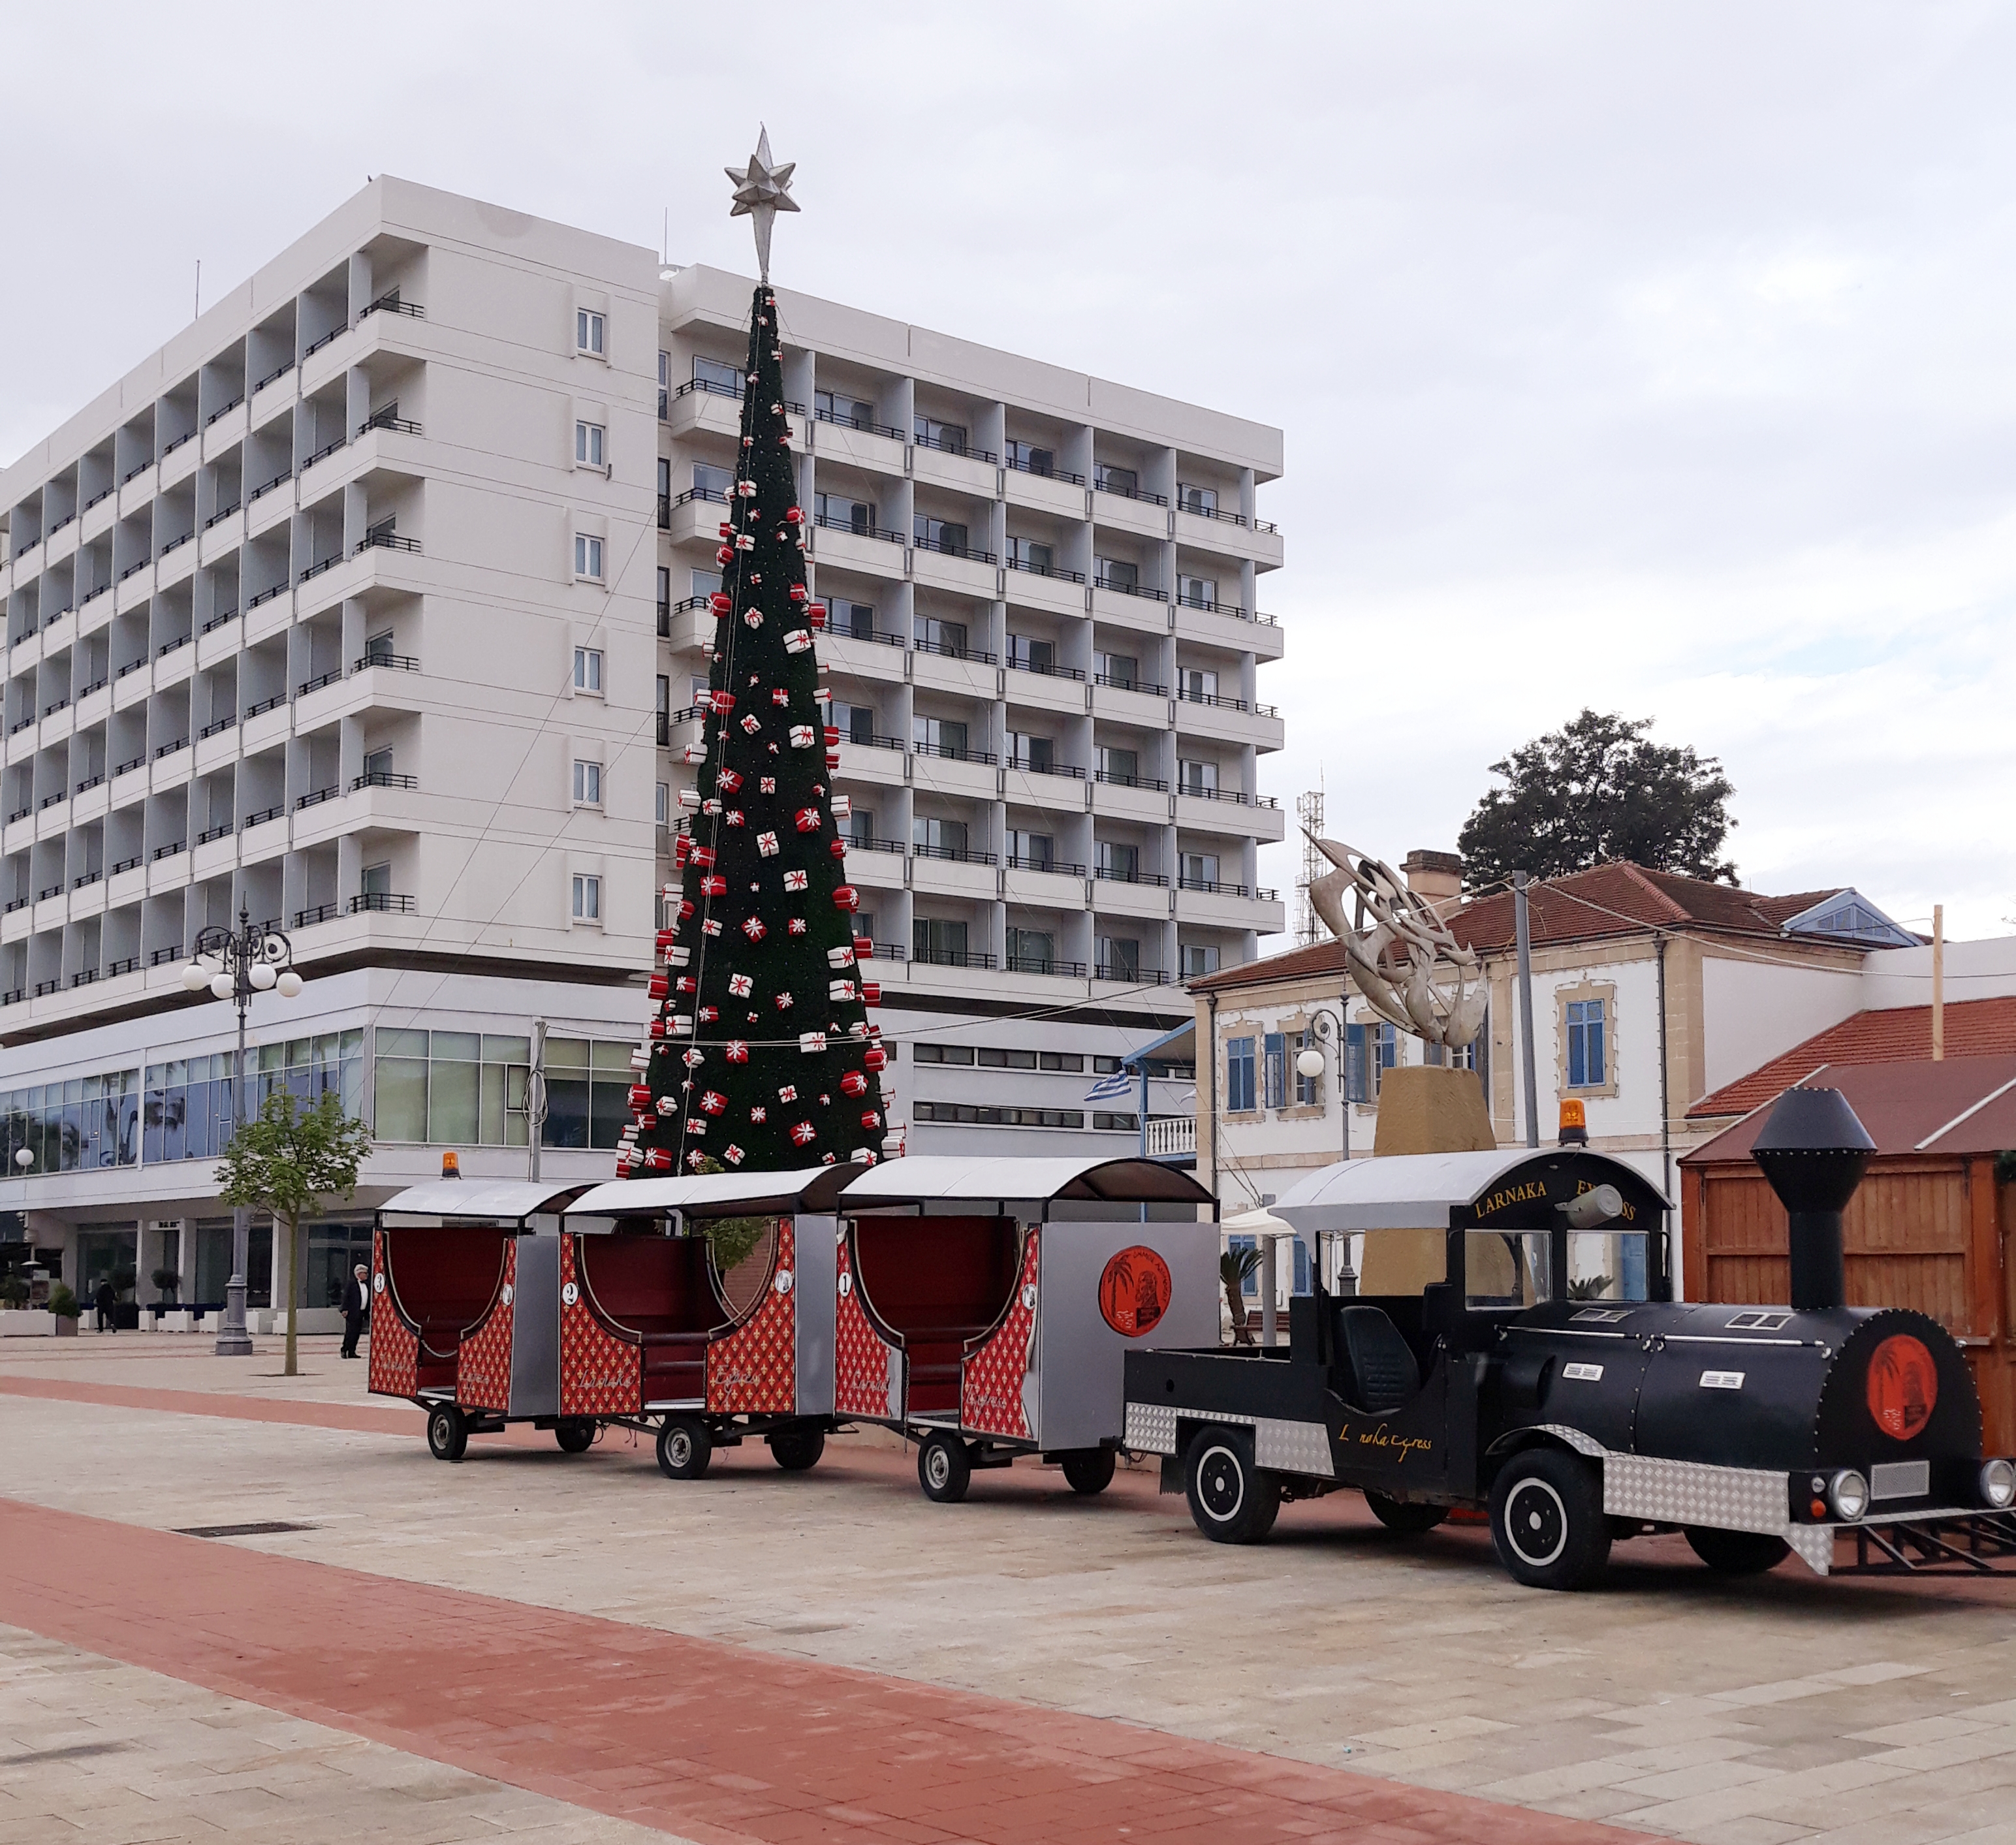 ΑΦΙΕΡΩΜΑ: Η Χριστουγεννιάτικη αγορά της Λάρνακας